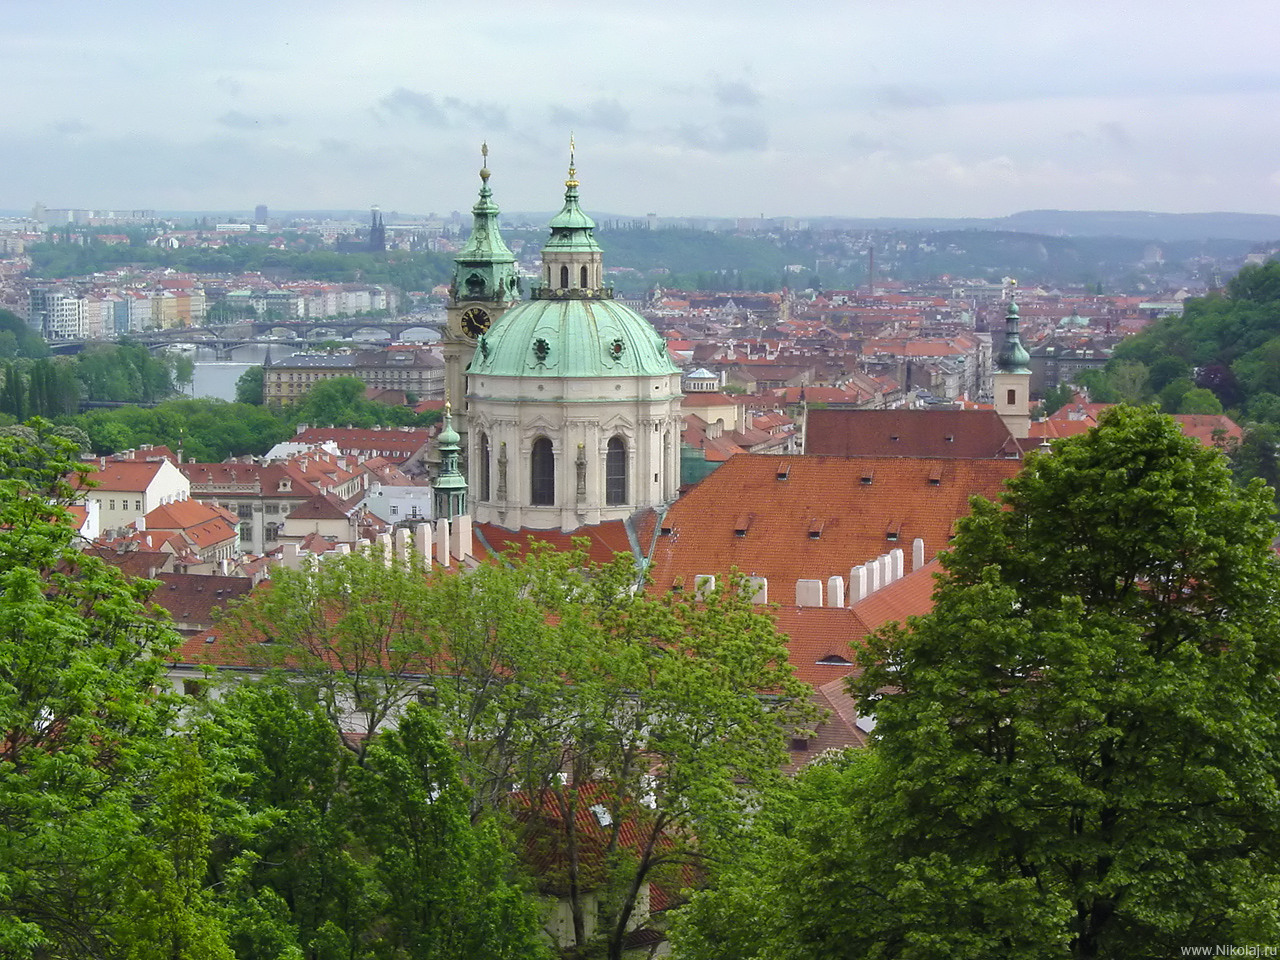 Прага. Панорама города